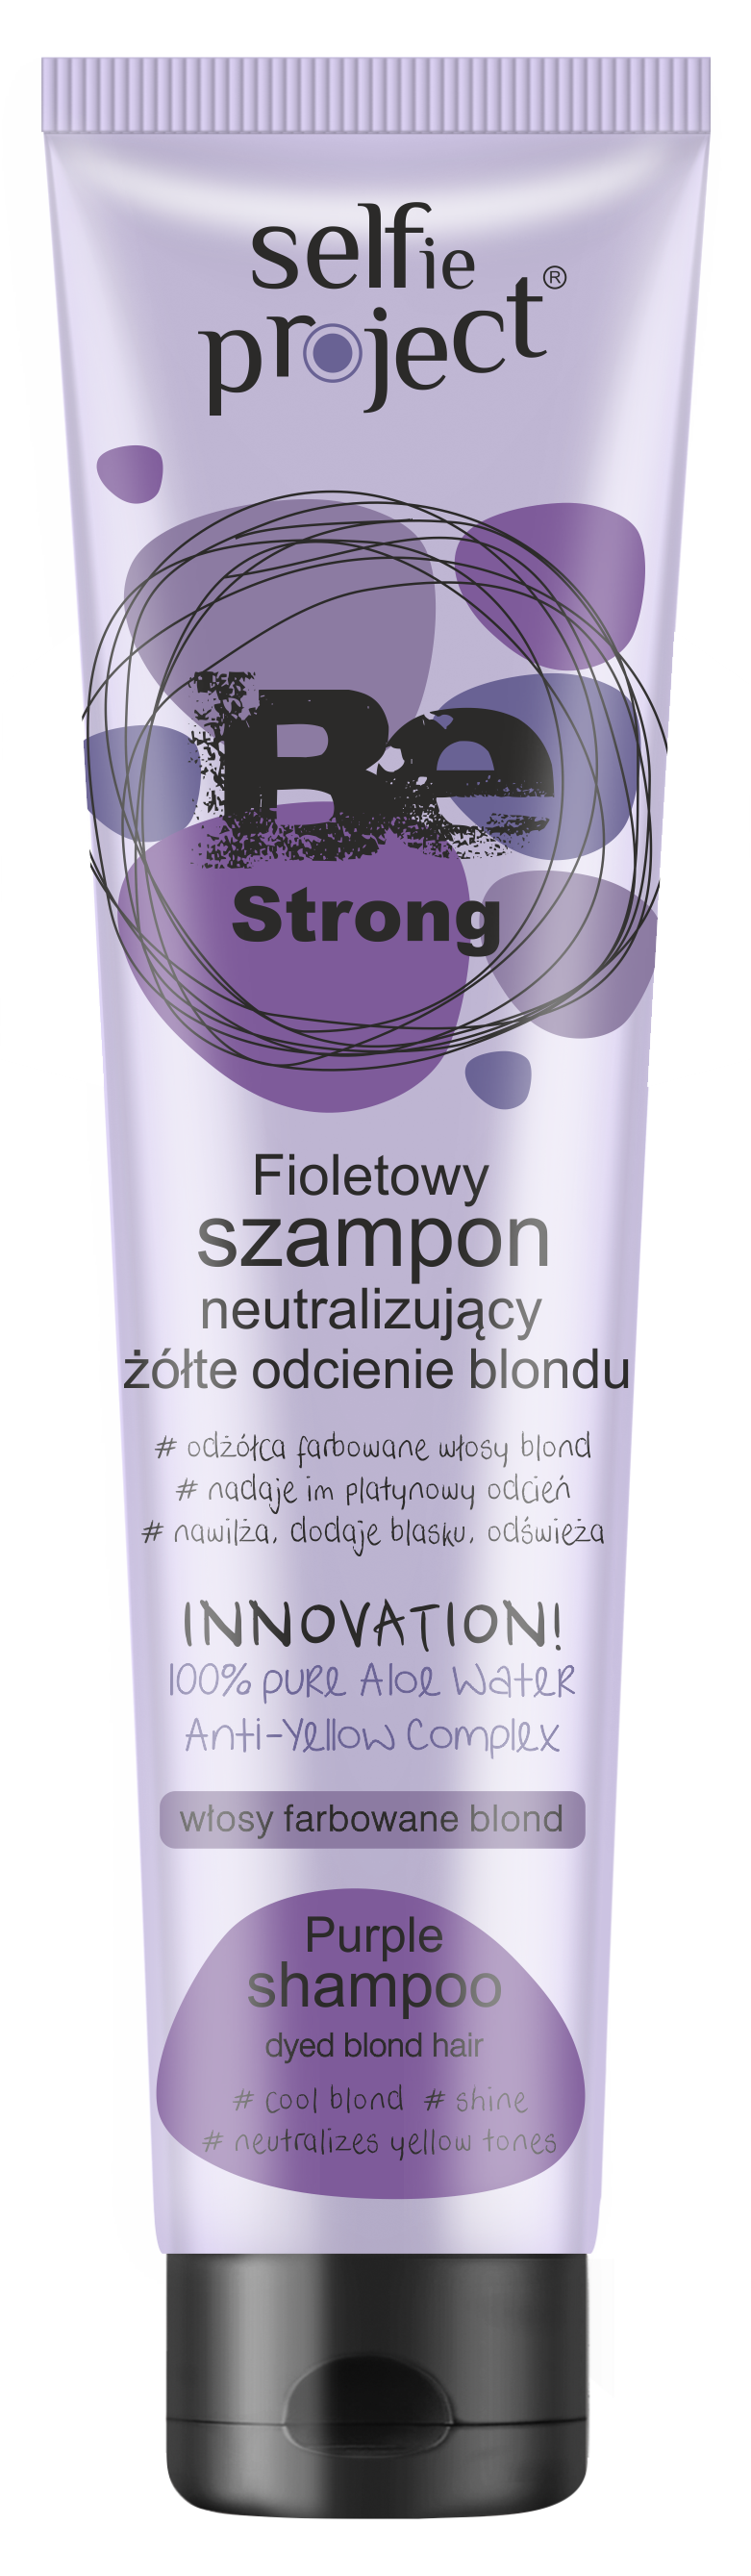 fioletowy szampon w ciazy czy mozna